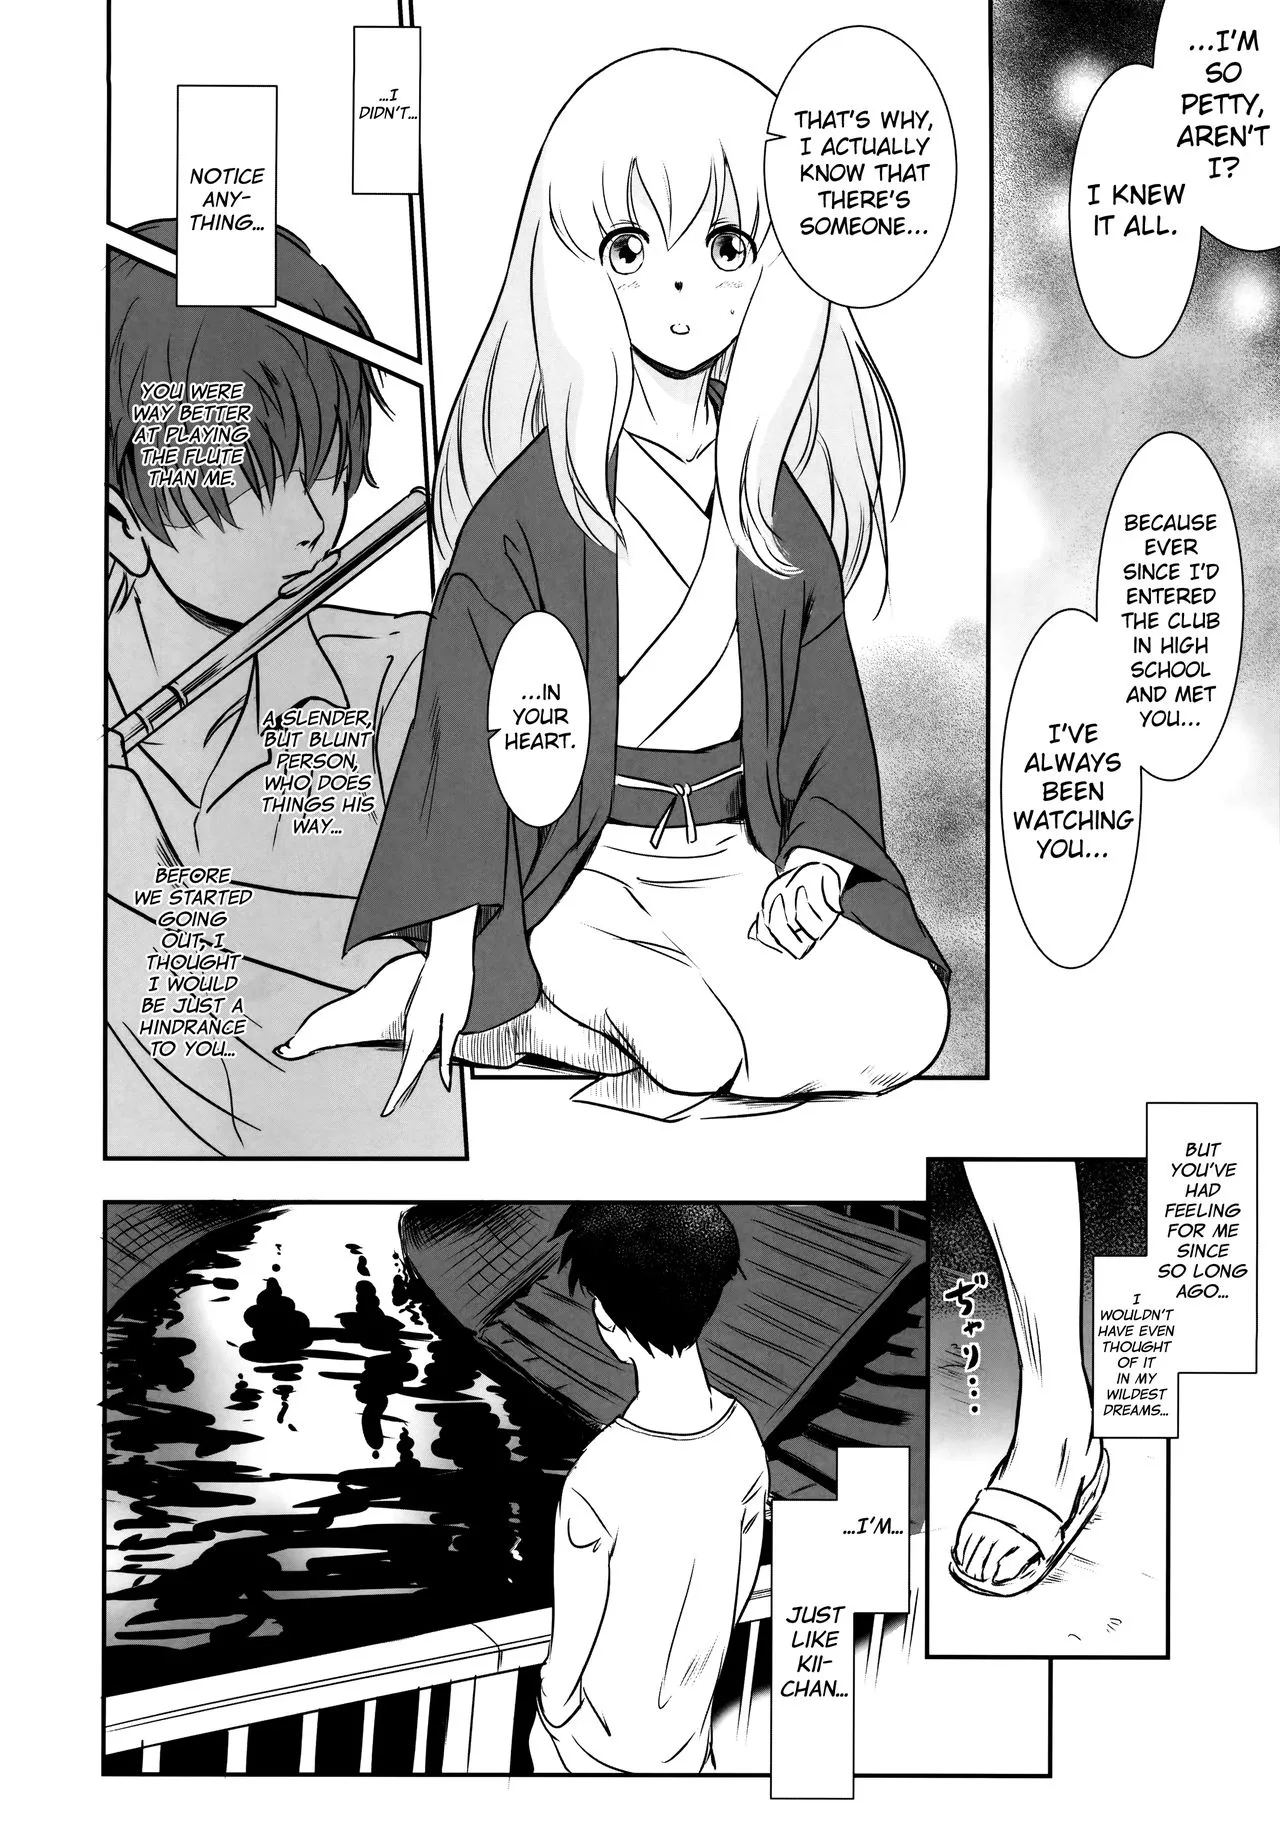 Story of the 'N' Situation - Situation#2 Kokoro Utsuri-10